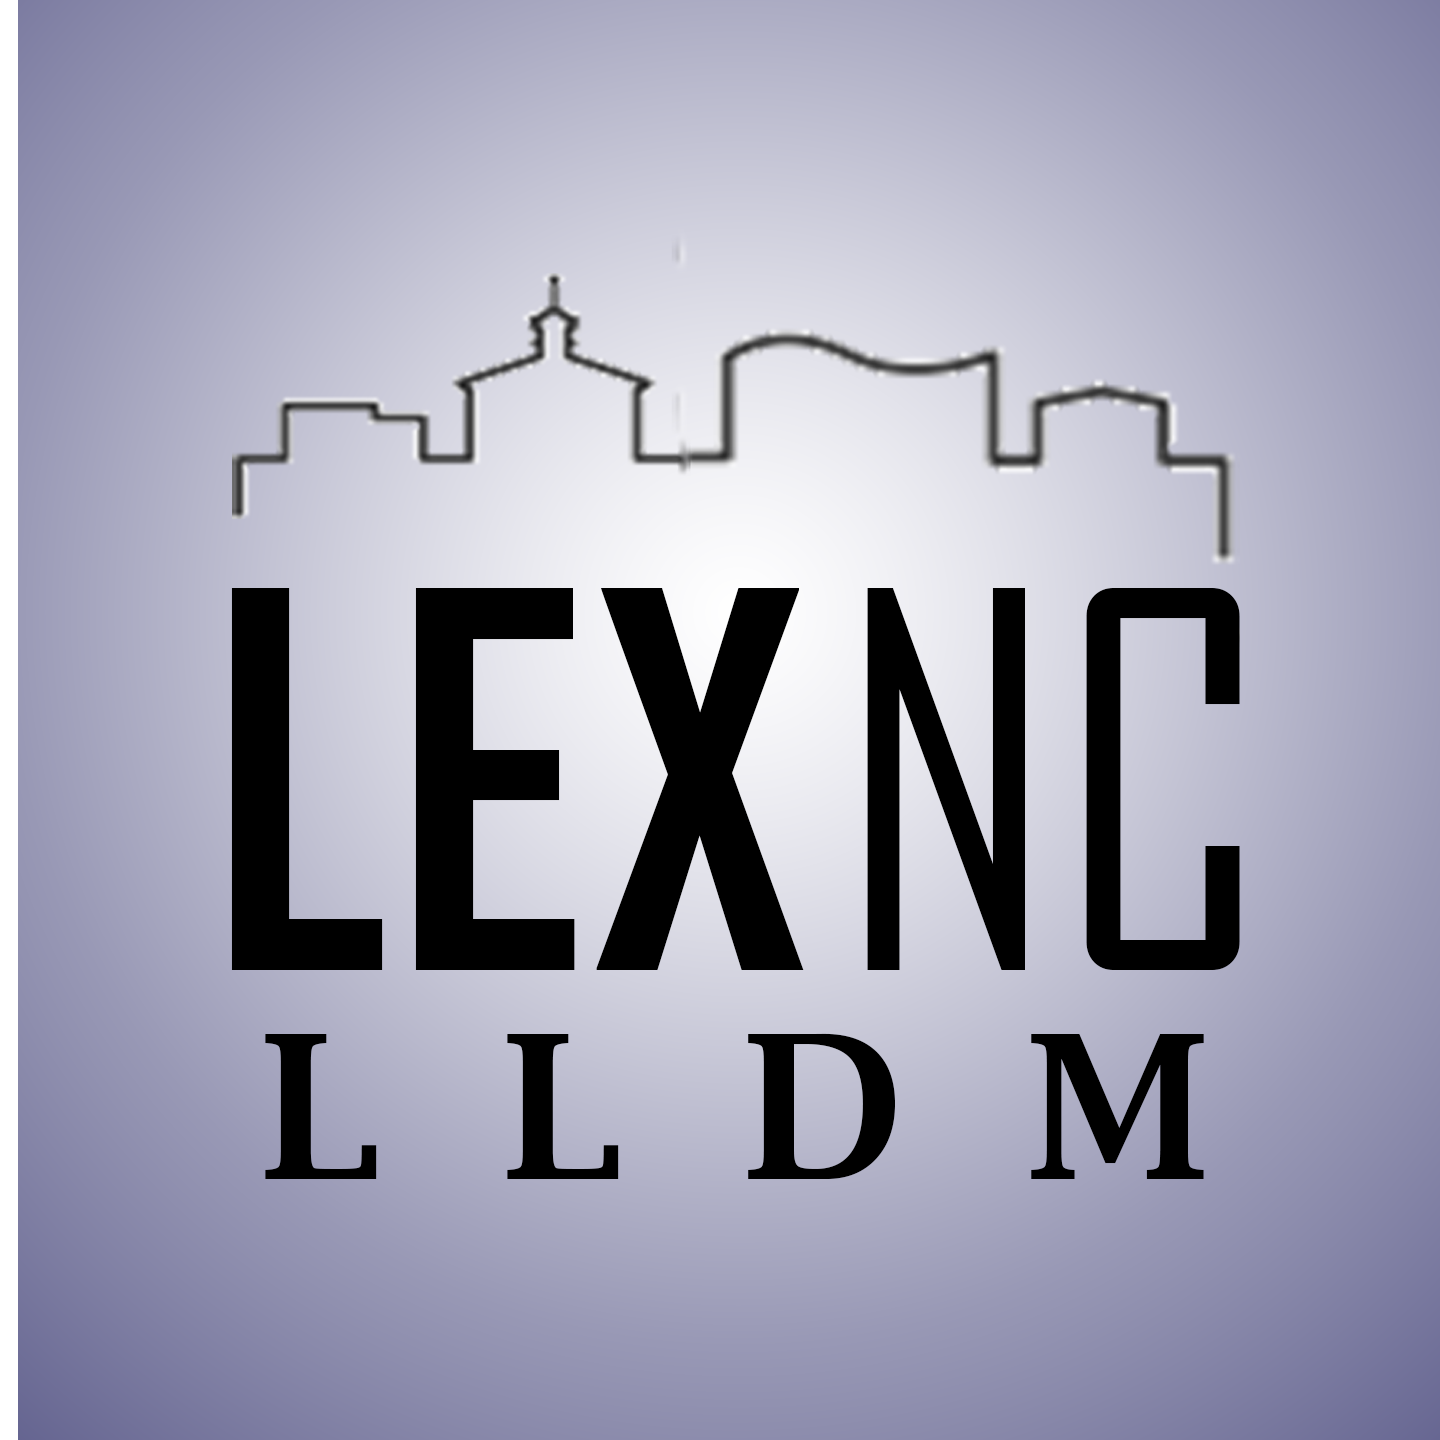 LLDM Lexington